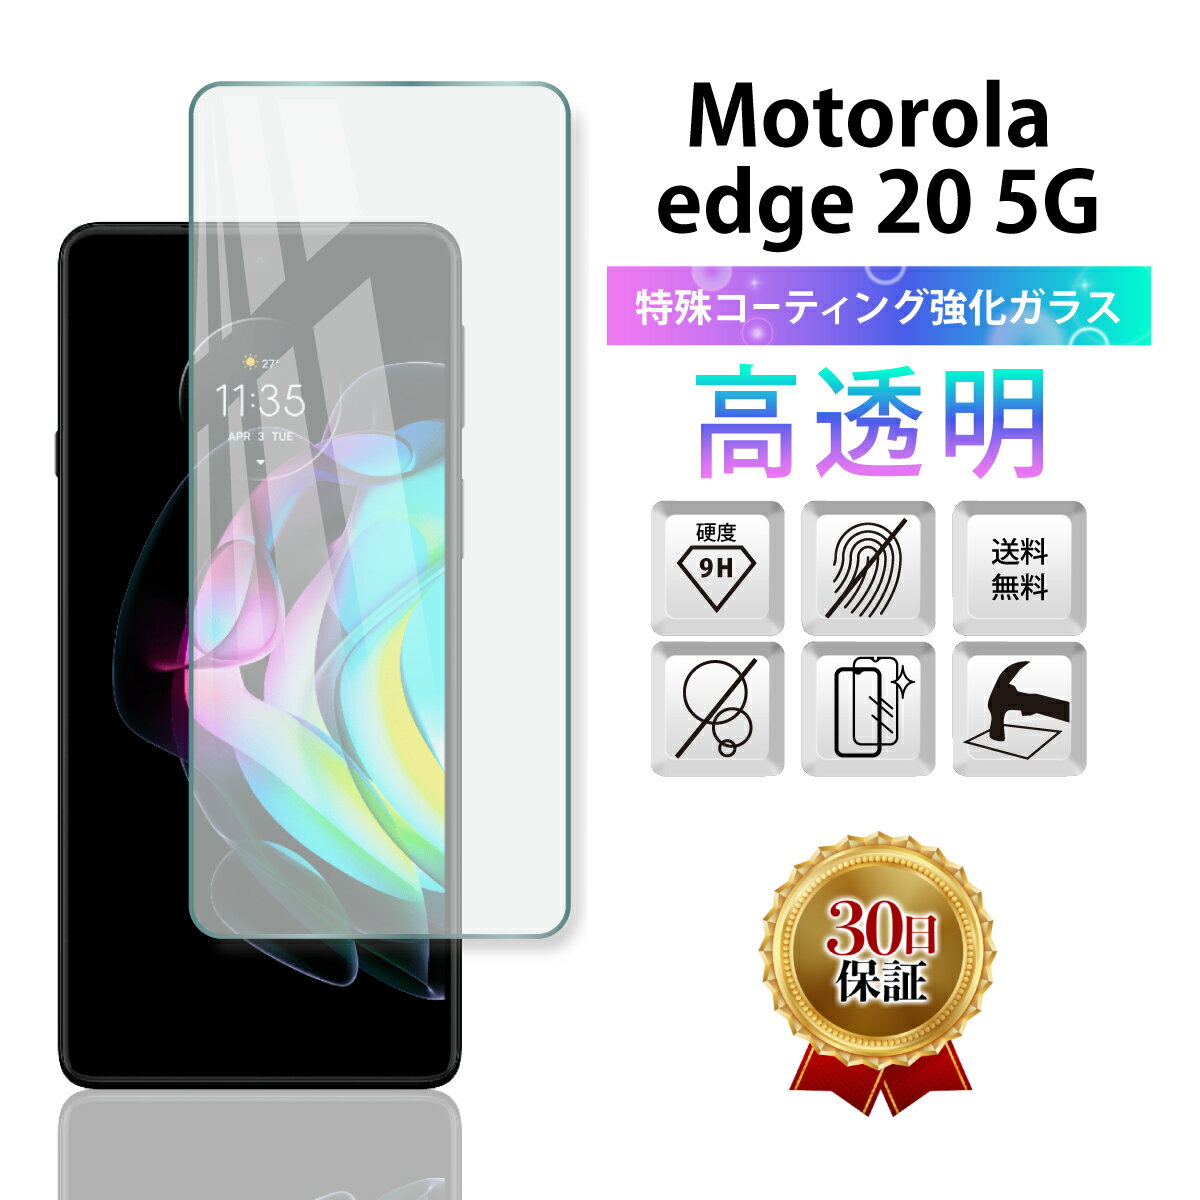 Motorola edge 20 5G ガラスフィルム 保護フィルム モトローラ エッジ20 XT2143-1 全面吸着 2.5D 平面設計 スマホ ガラス カバー 保護 フィルム 液晶 画面 指紋 割れ 防止 衝撃 透明 Clear クリア